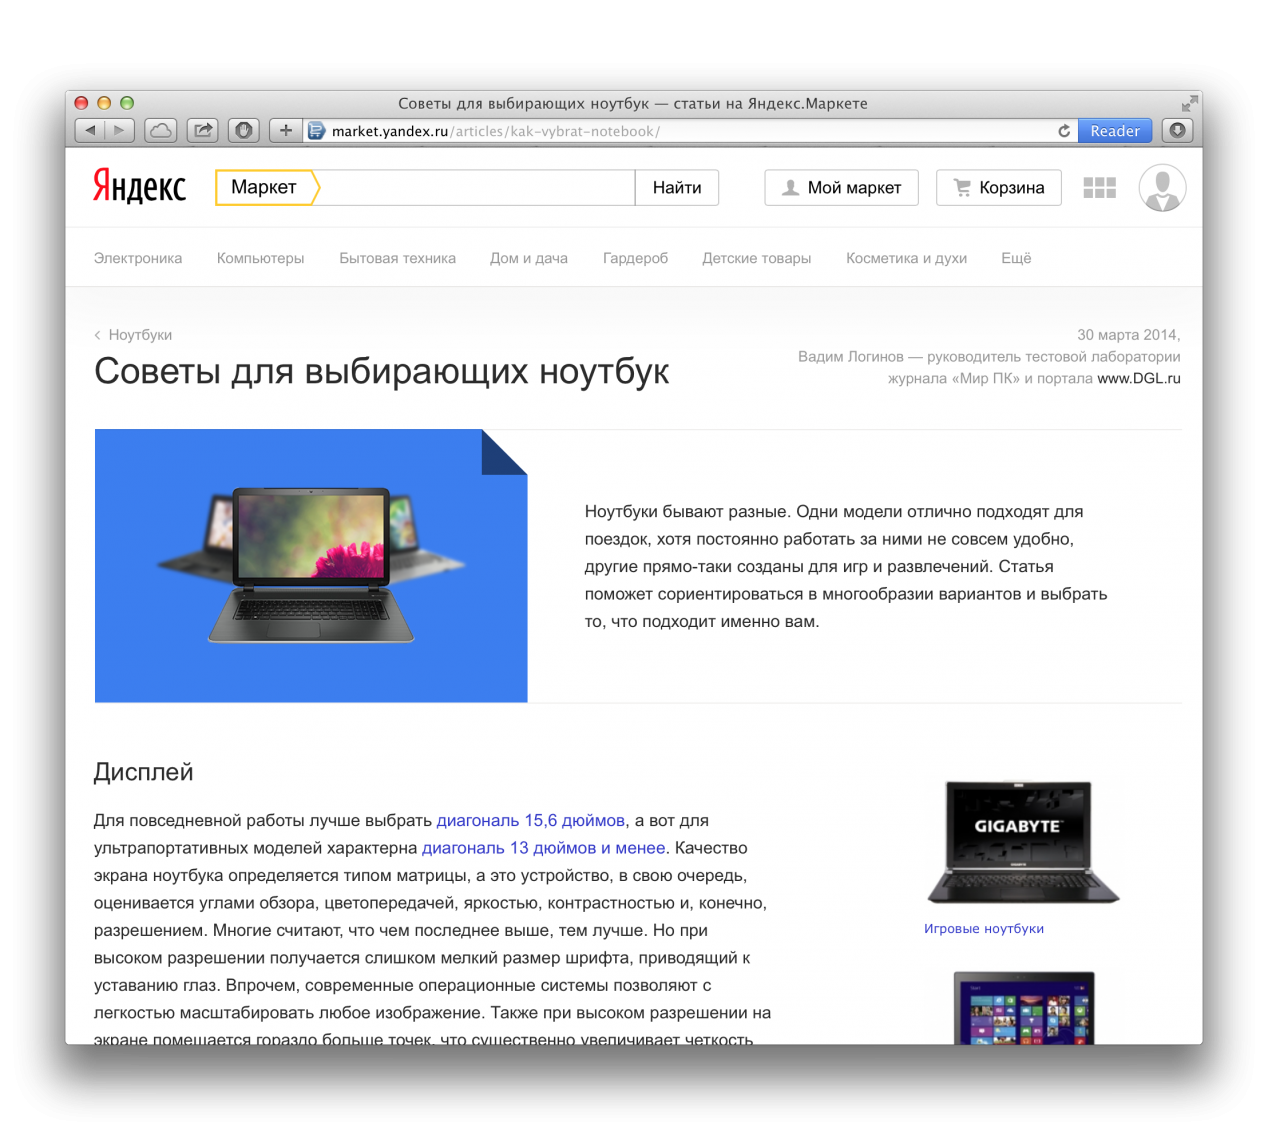 Яндекс.Маркет начал сотрудничать с отраслевыми СМИ о гаджетах - 1